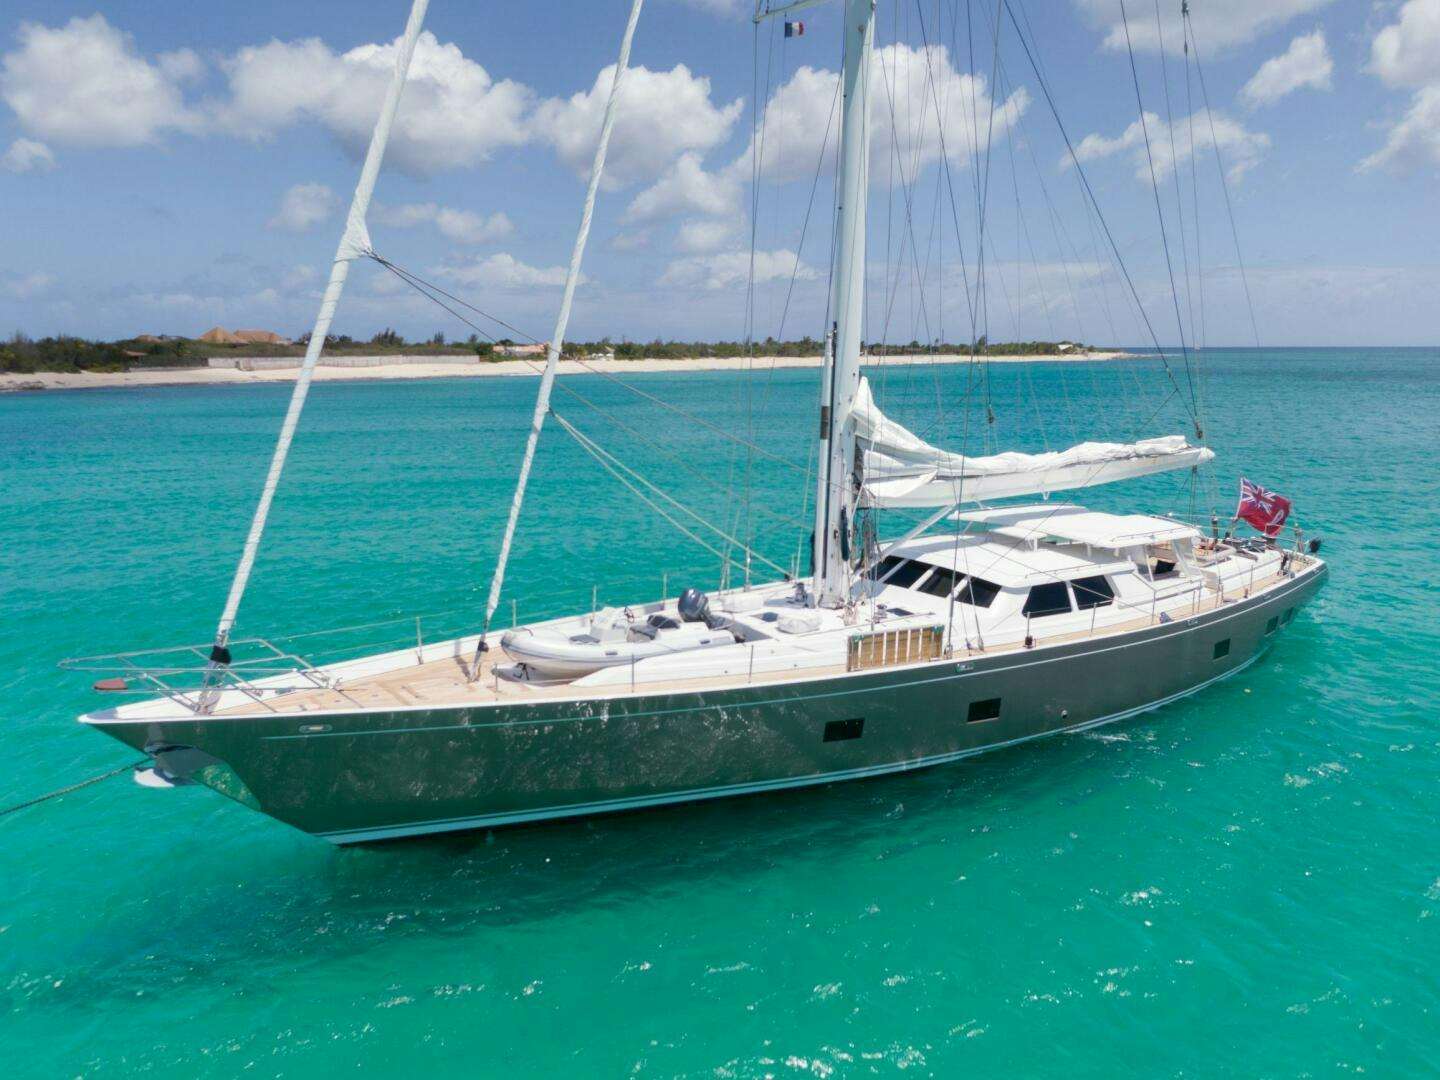 Vagabond
Yacht for Sale